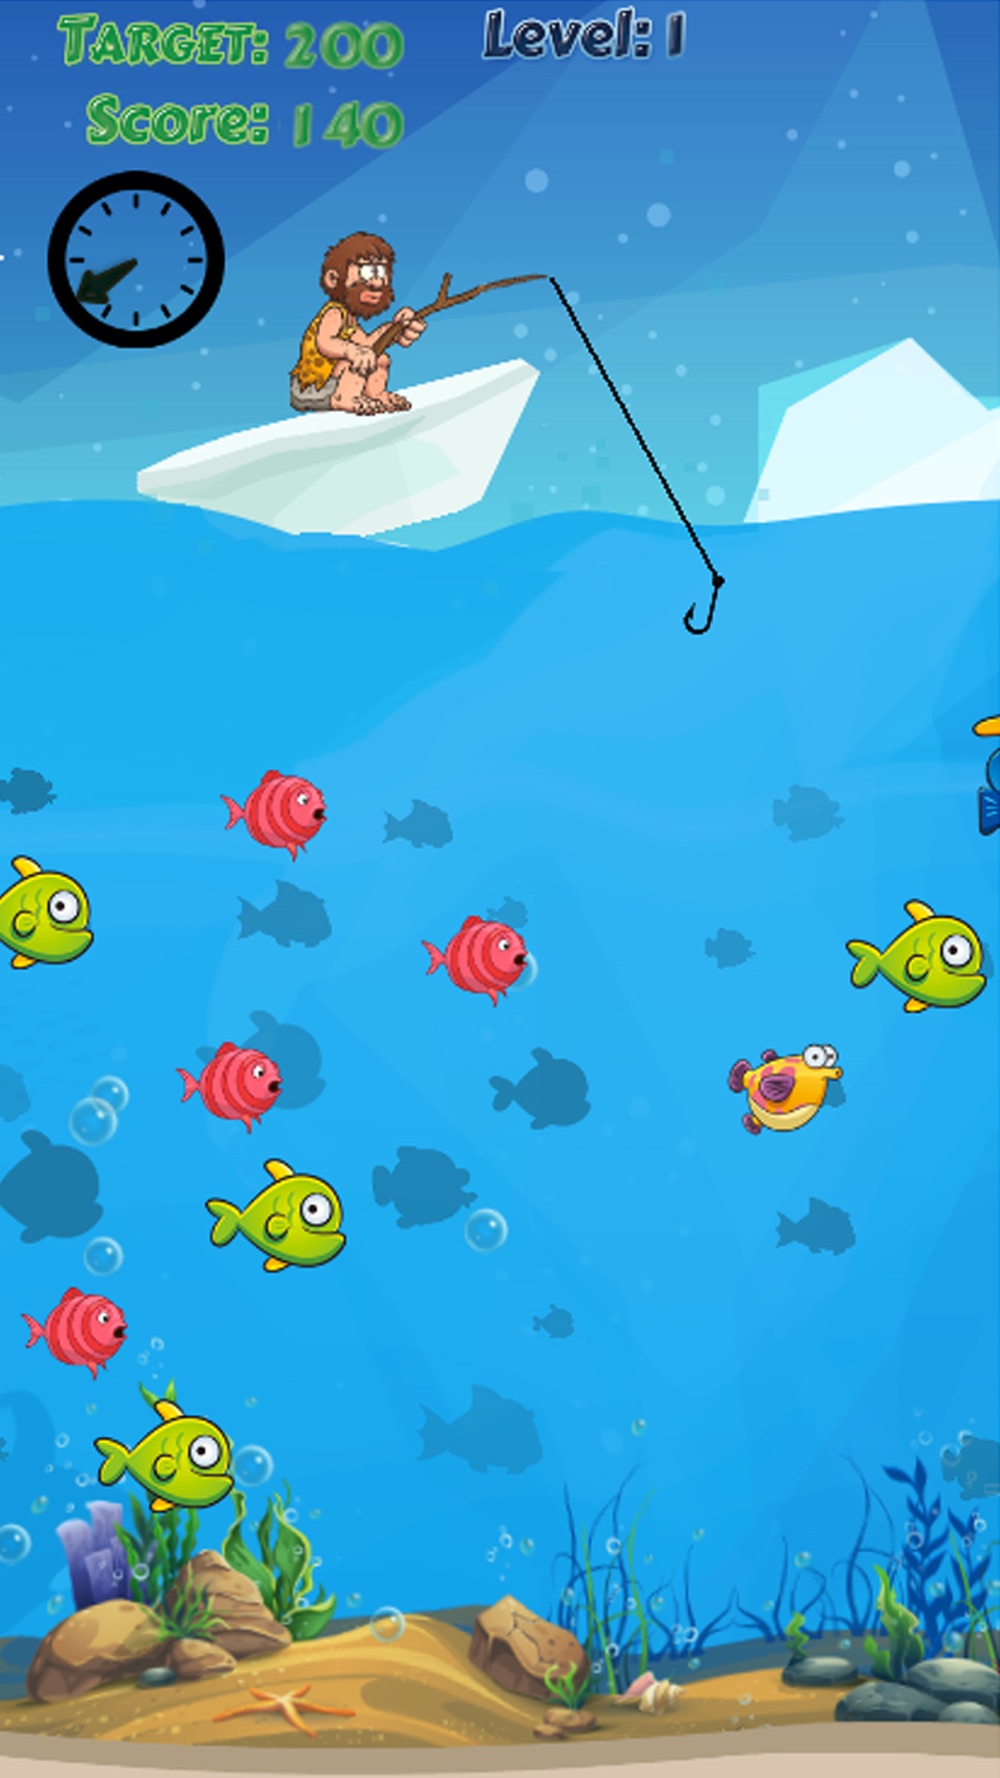 釣り 北極 ゲーム 狩猟 魚 ゲーム Free Download App For Iphone Steprimo Com